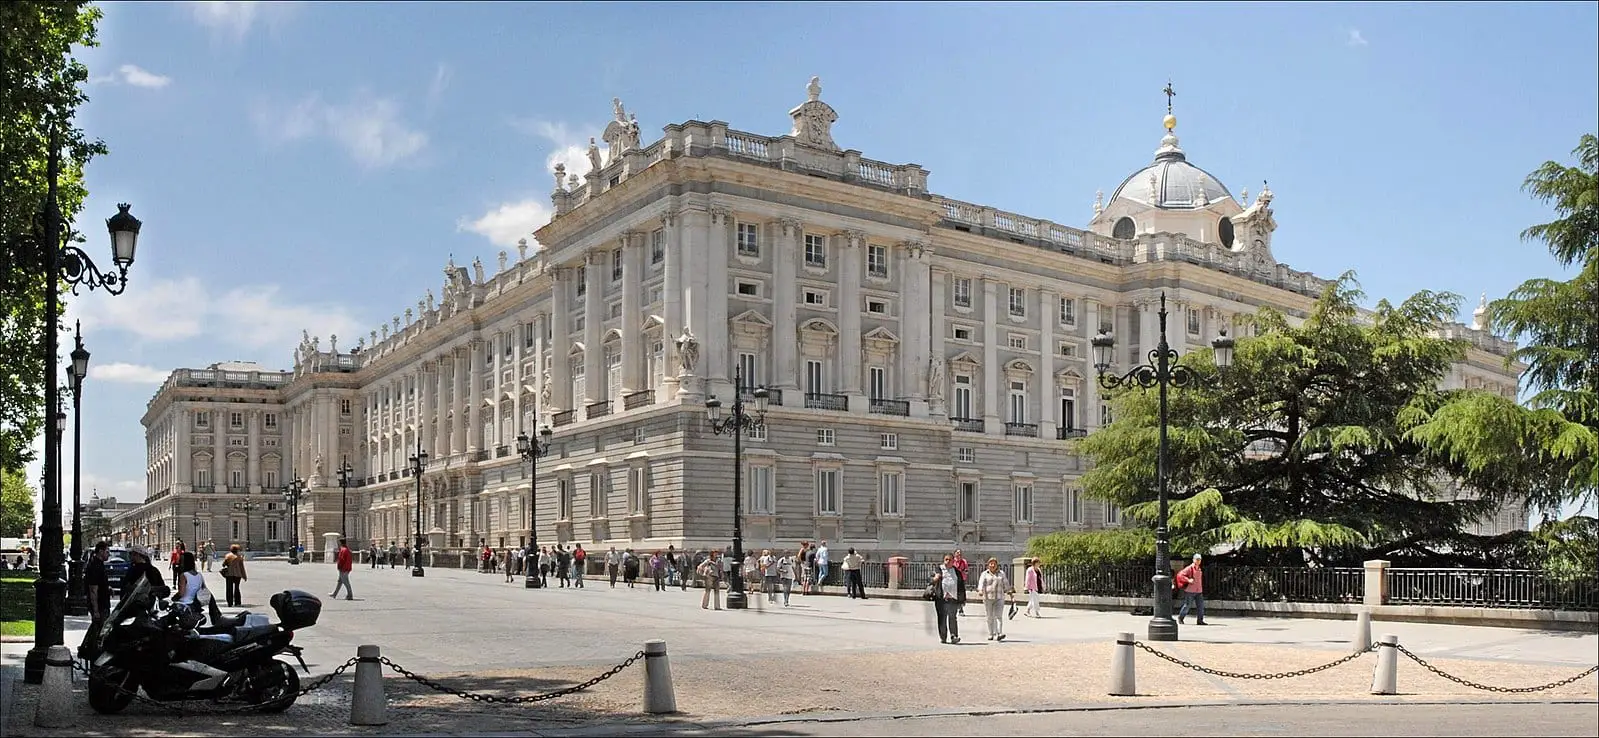 Vacanta in Madrid. 7 locuri de care te poti bucura gratuit in orasul construit pe ruinele unui fort maur